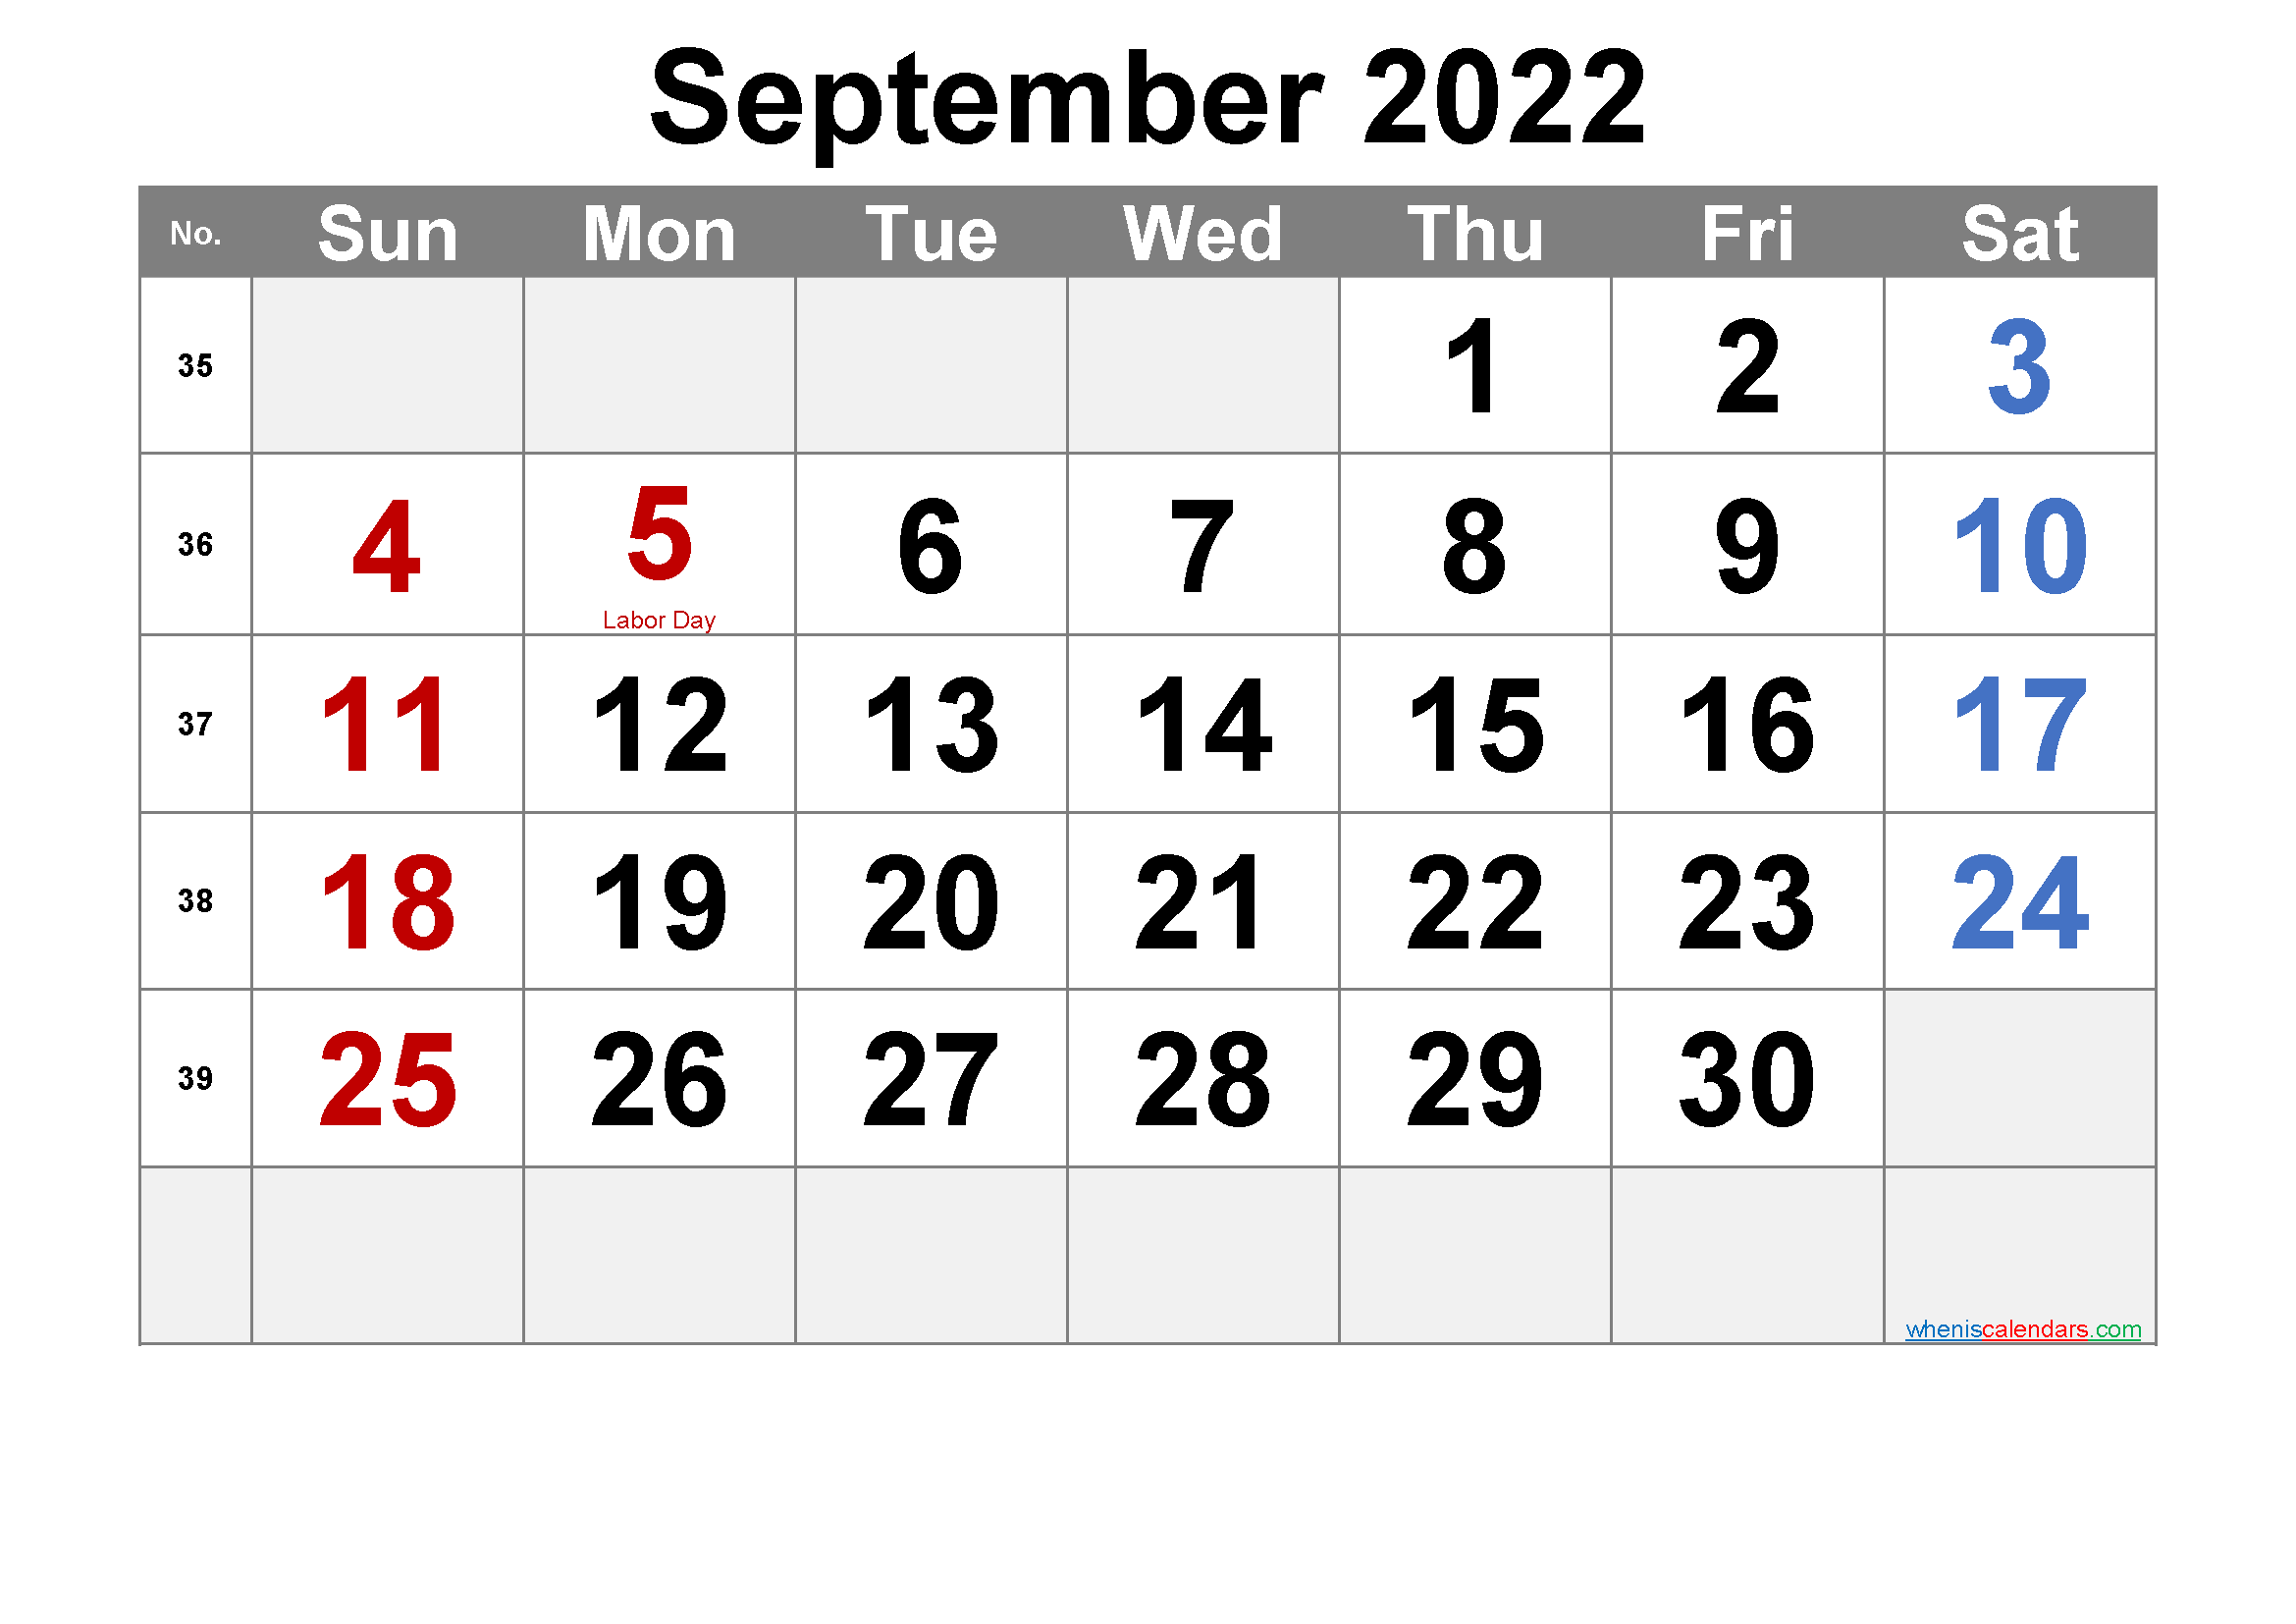 September 2022 Calendar With Holidays Usa September 2022 Printable Calendar With Holidays